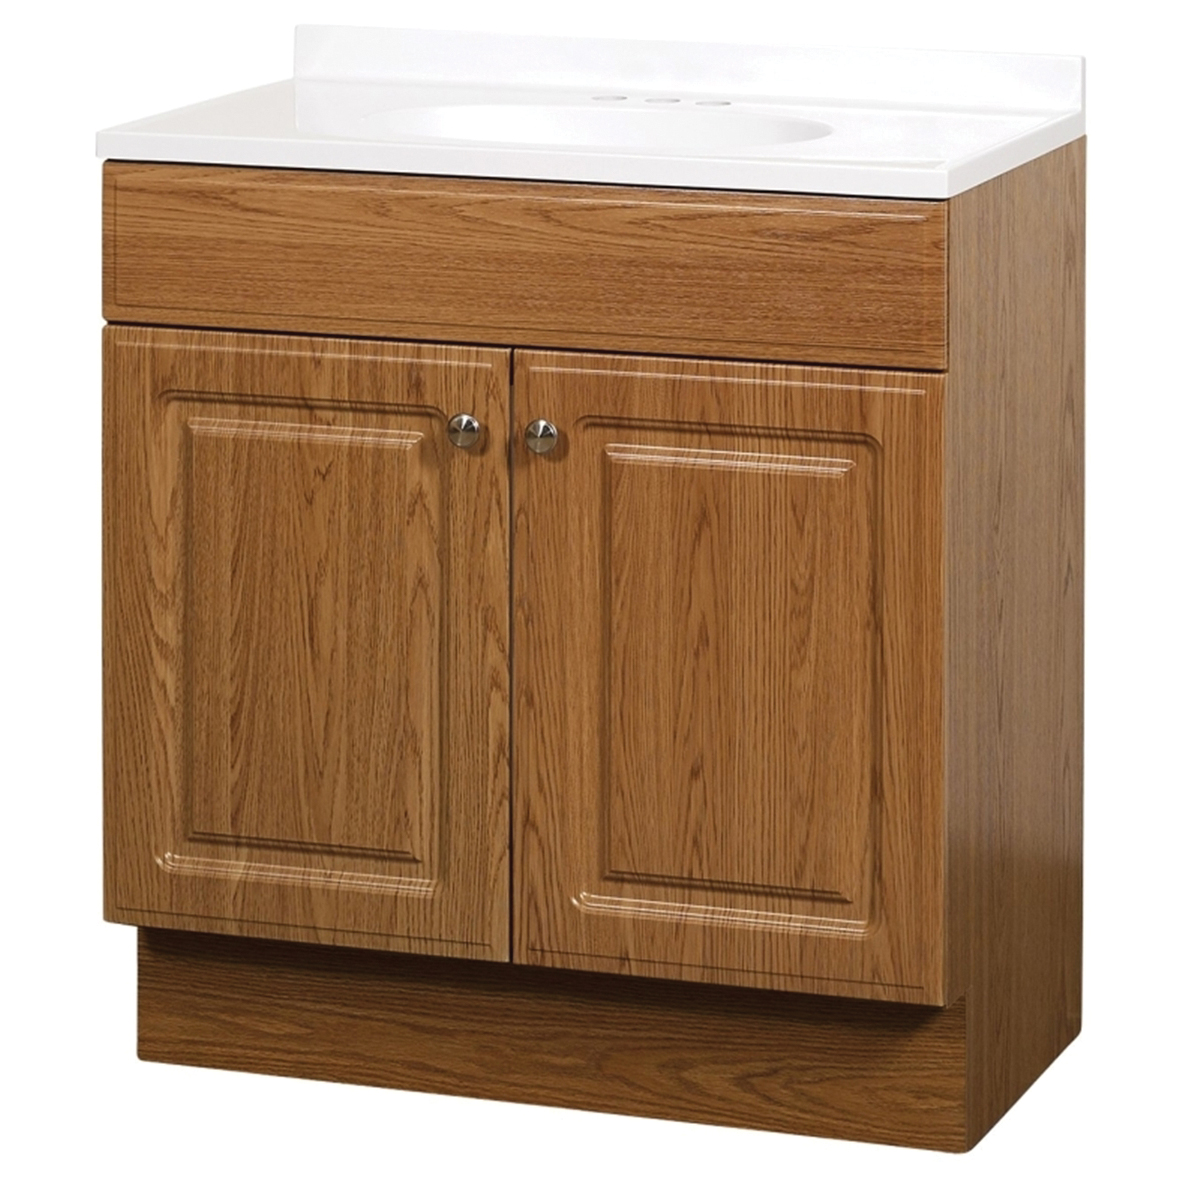 RBC30KK 2-Door Raised Panel Vanity with Top, Wood, Oak, Cultured Marble Sink, White Sink